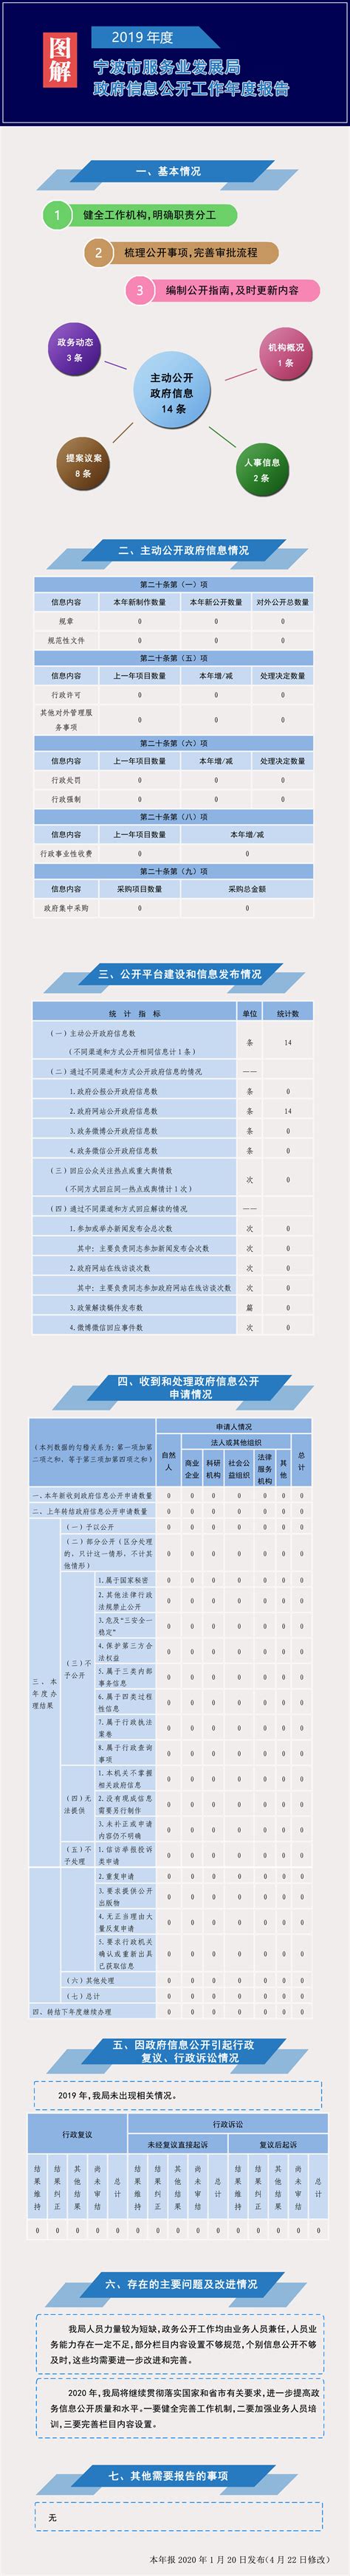 宁波市服务业发展局2019年政府信息公开工作年度报告